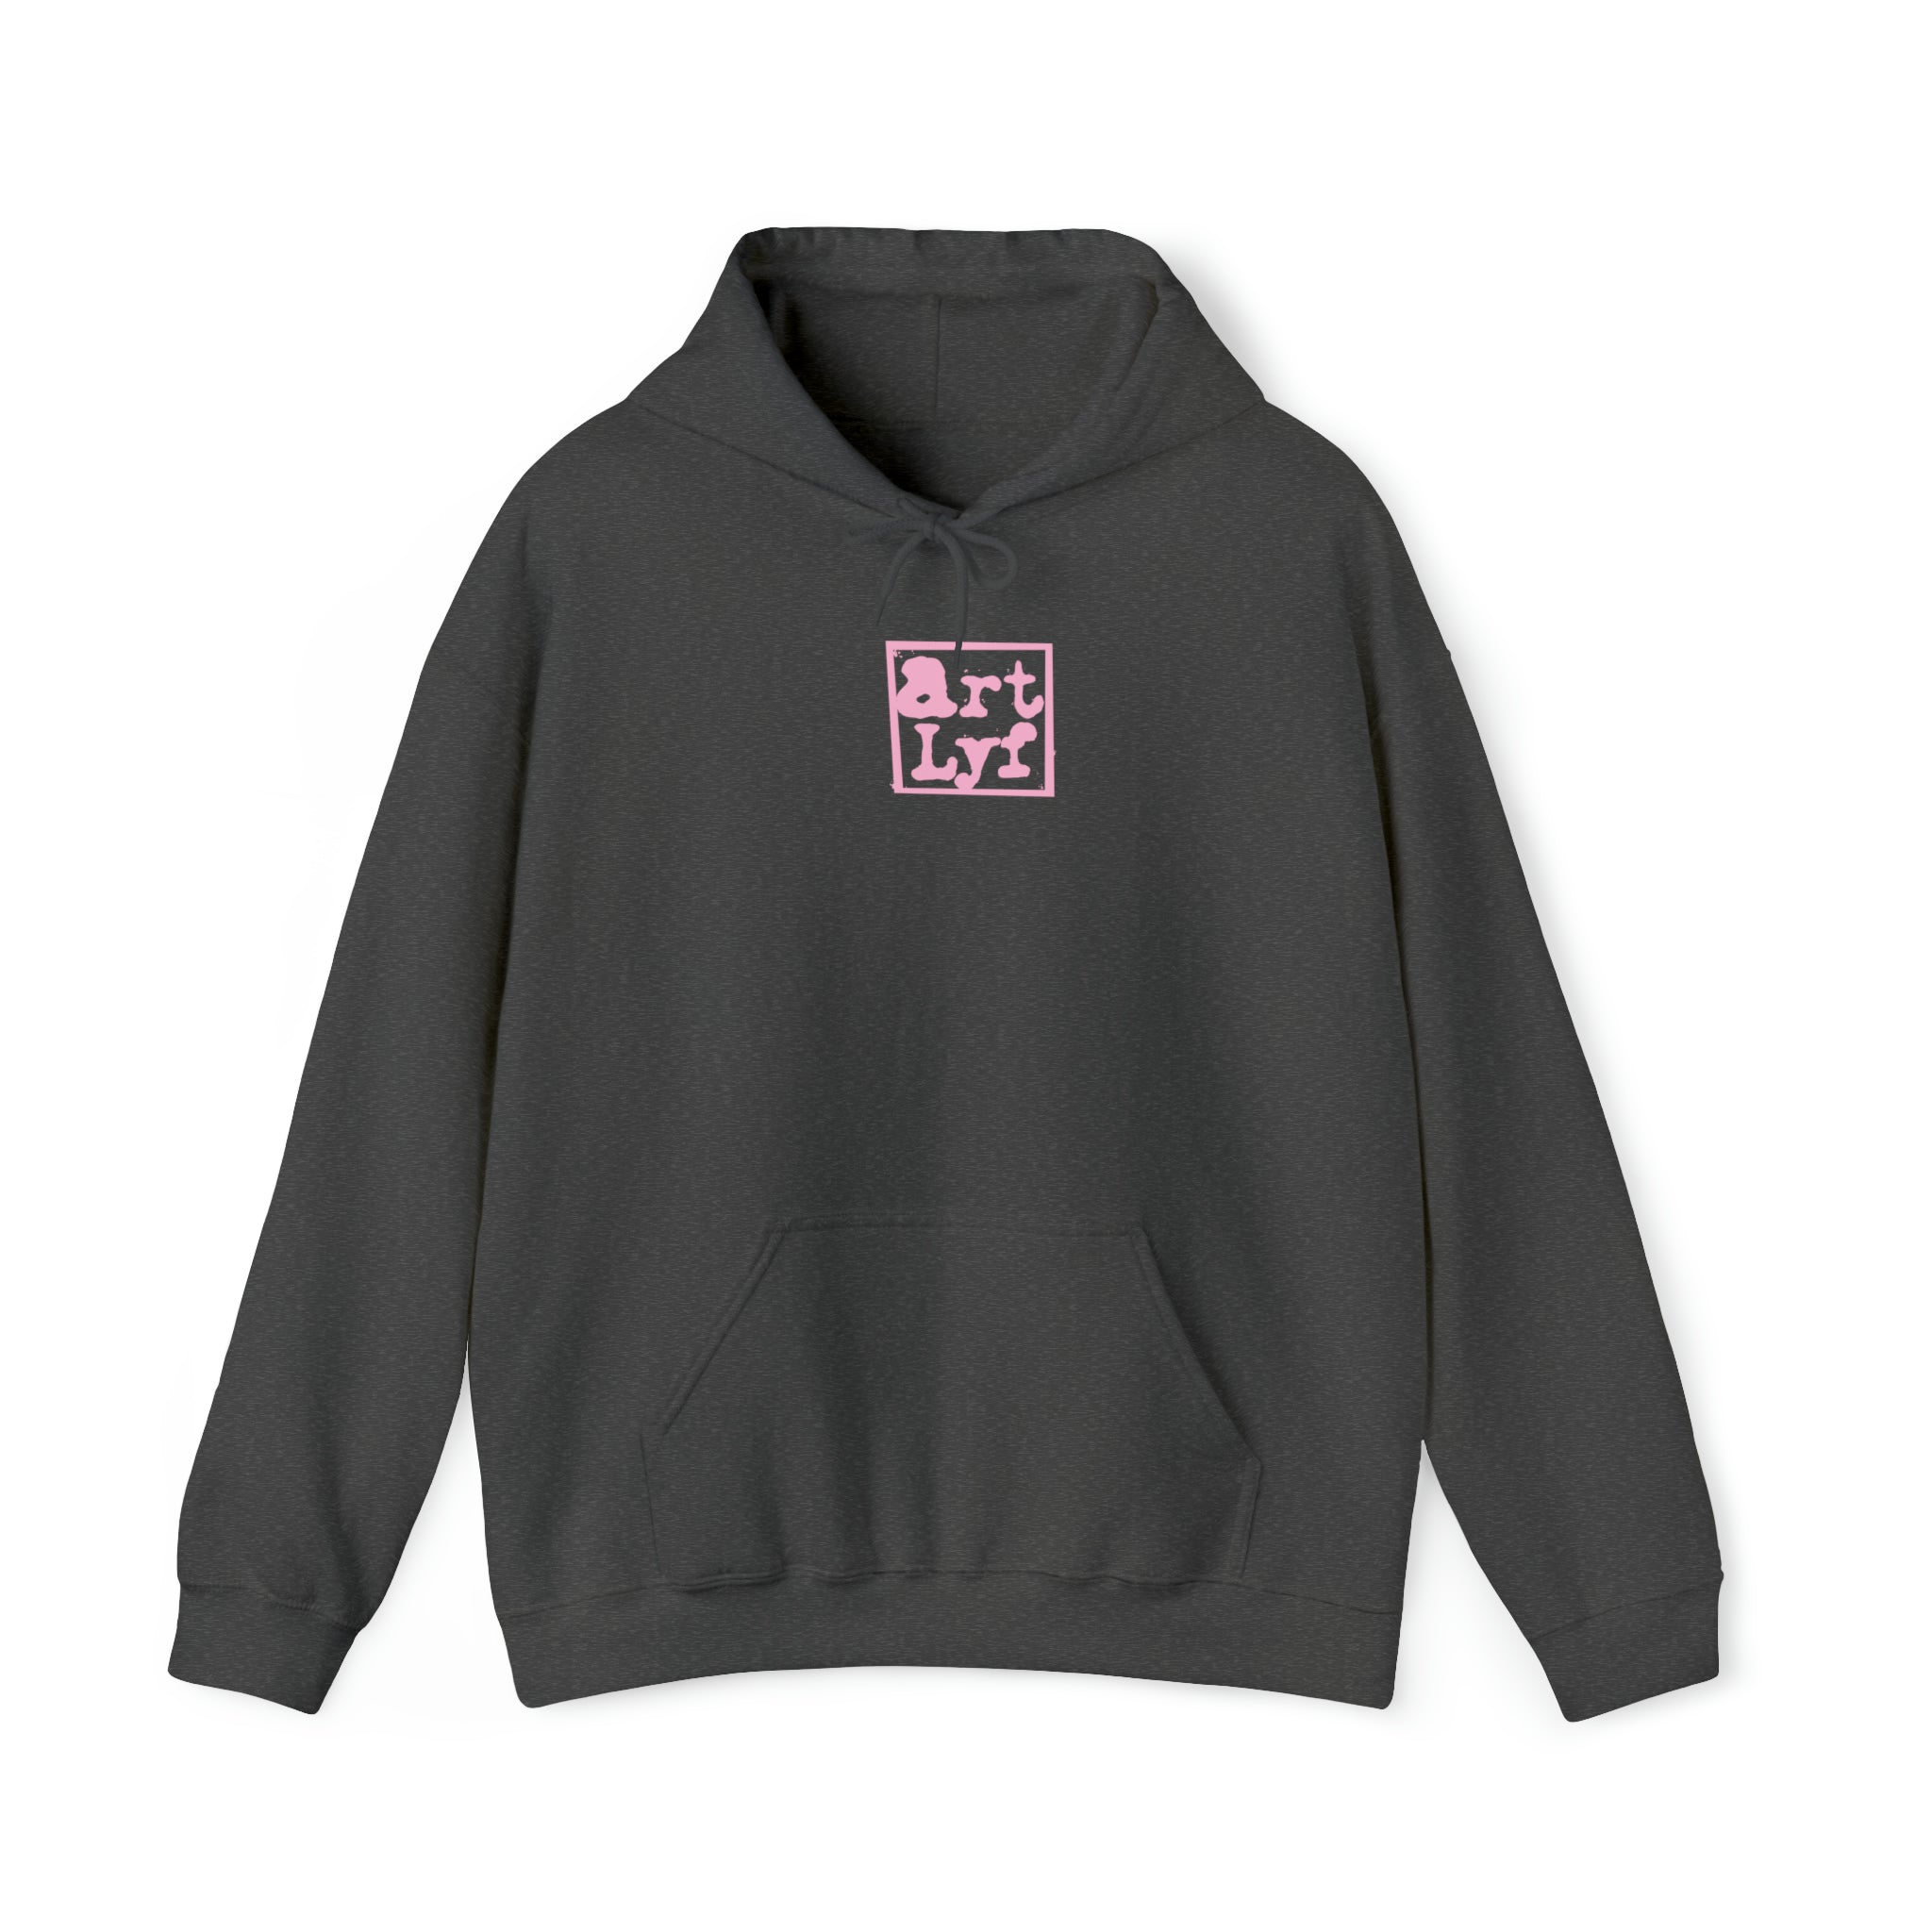 Art Lyf Pink Logo Unisex Heavy Blend™ Hooded Sweatshirt